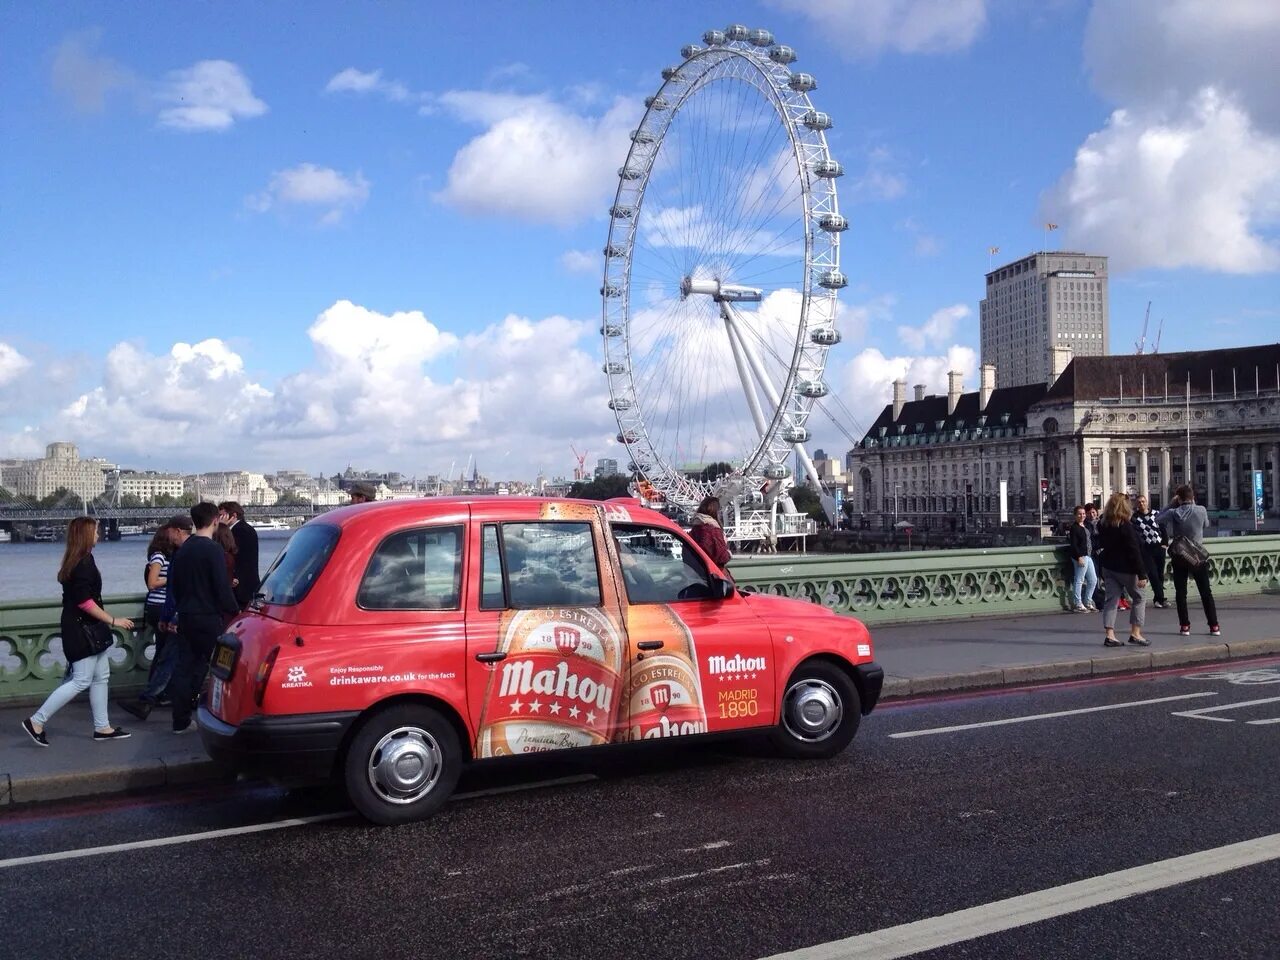 Реклама лондона. Такси в Лондоне. London реклама. Достопримечательности Лондона такси. Реклама на такси Лондон.